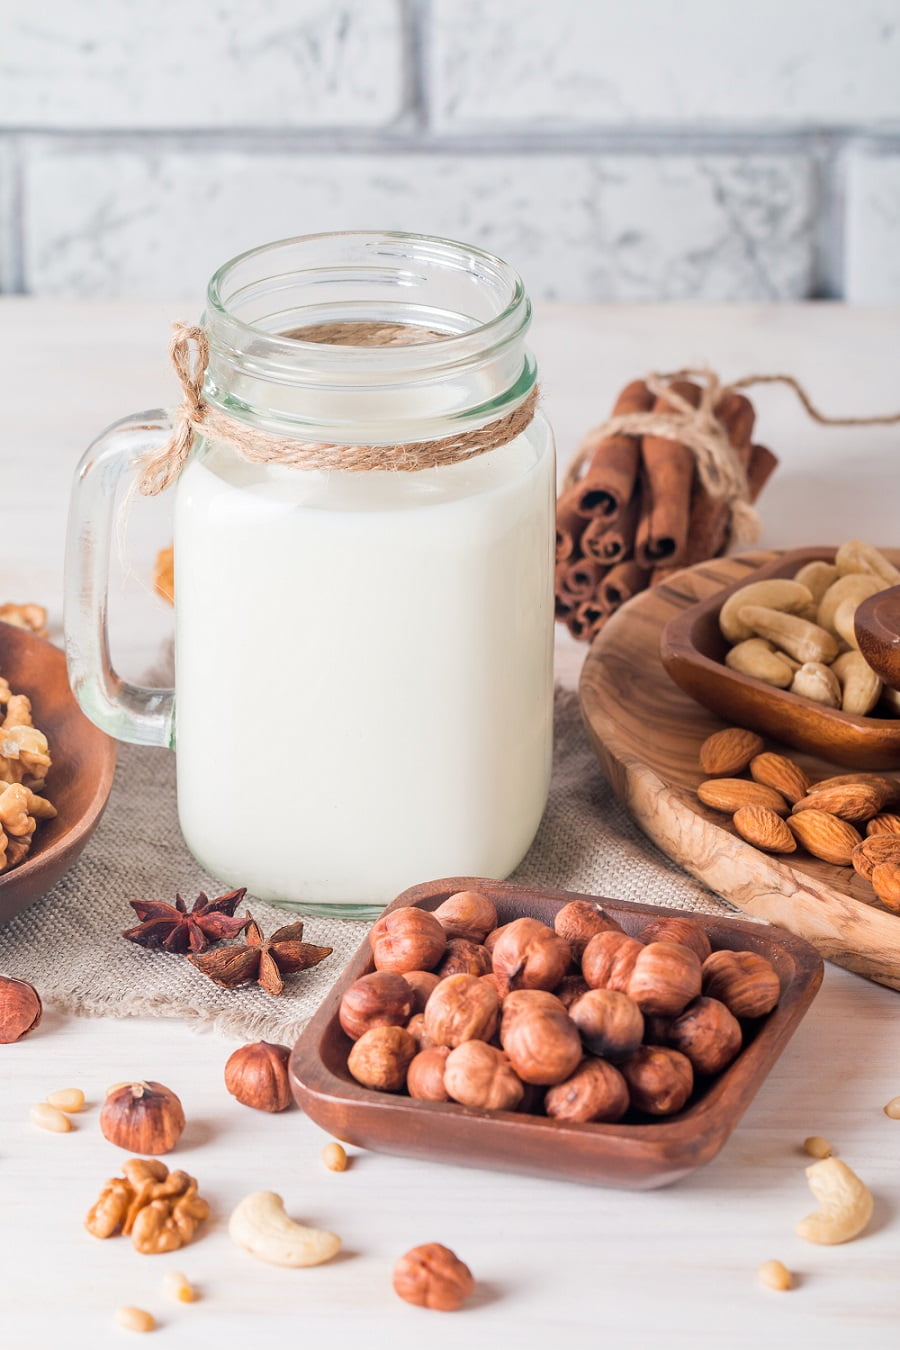 9 Homemade Dairy-Free Vegan Milk Recipes #plantmilk